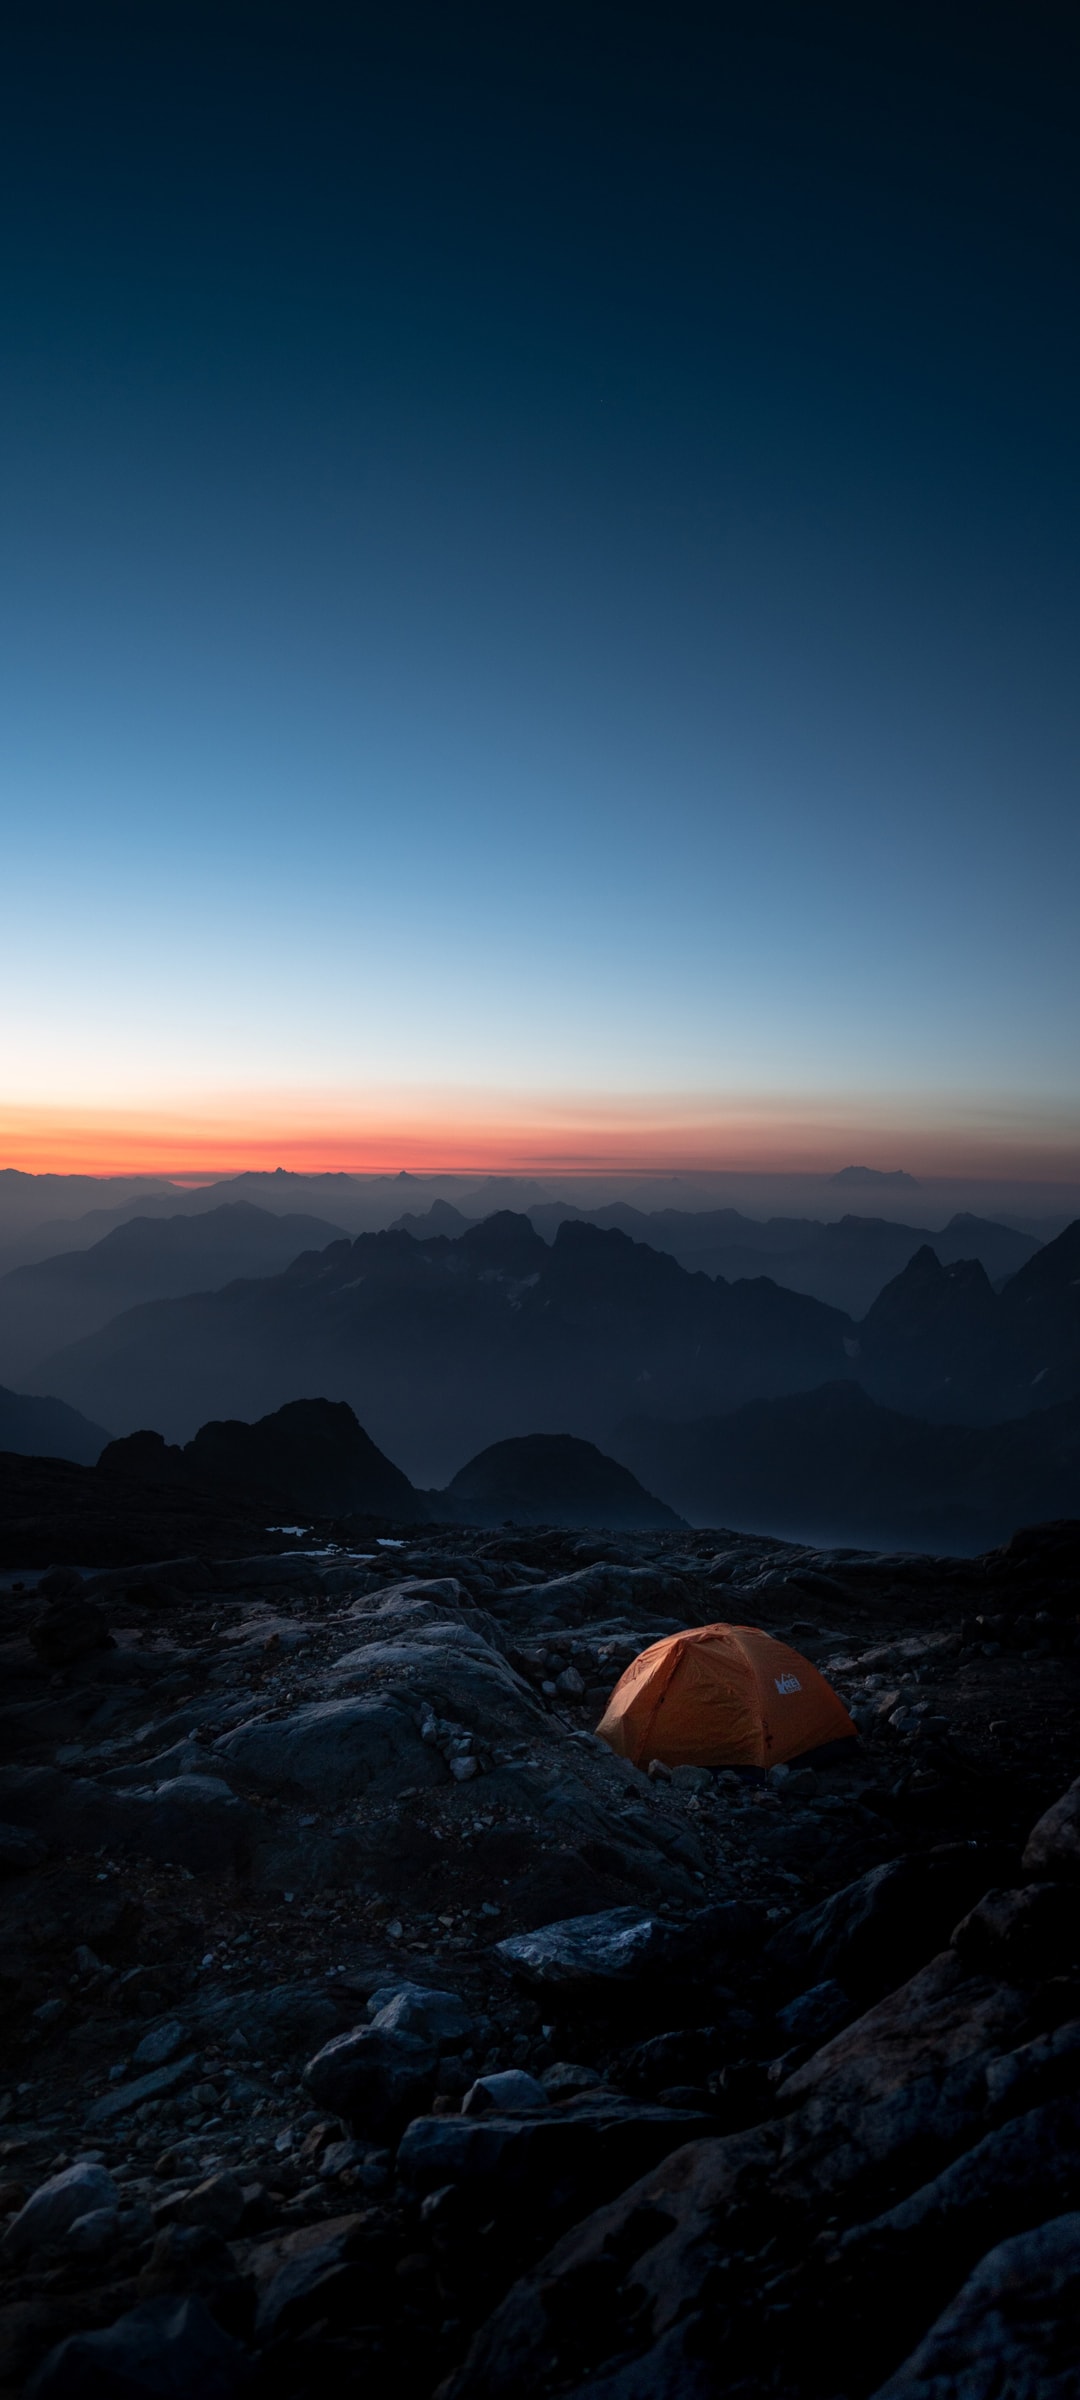 大山中橘色的旅行帐篷孤寂风景手机壁纸